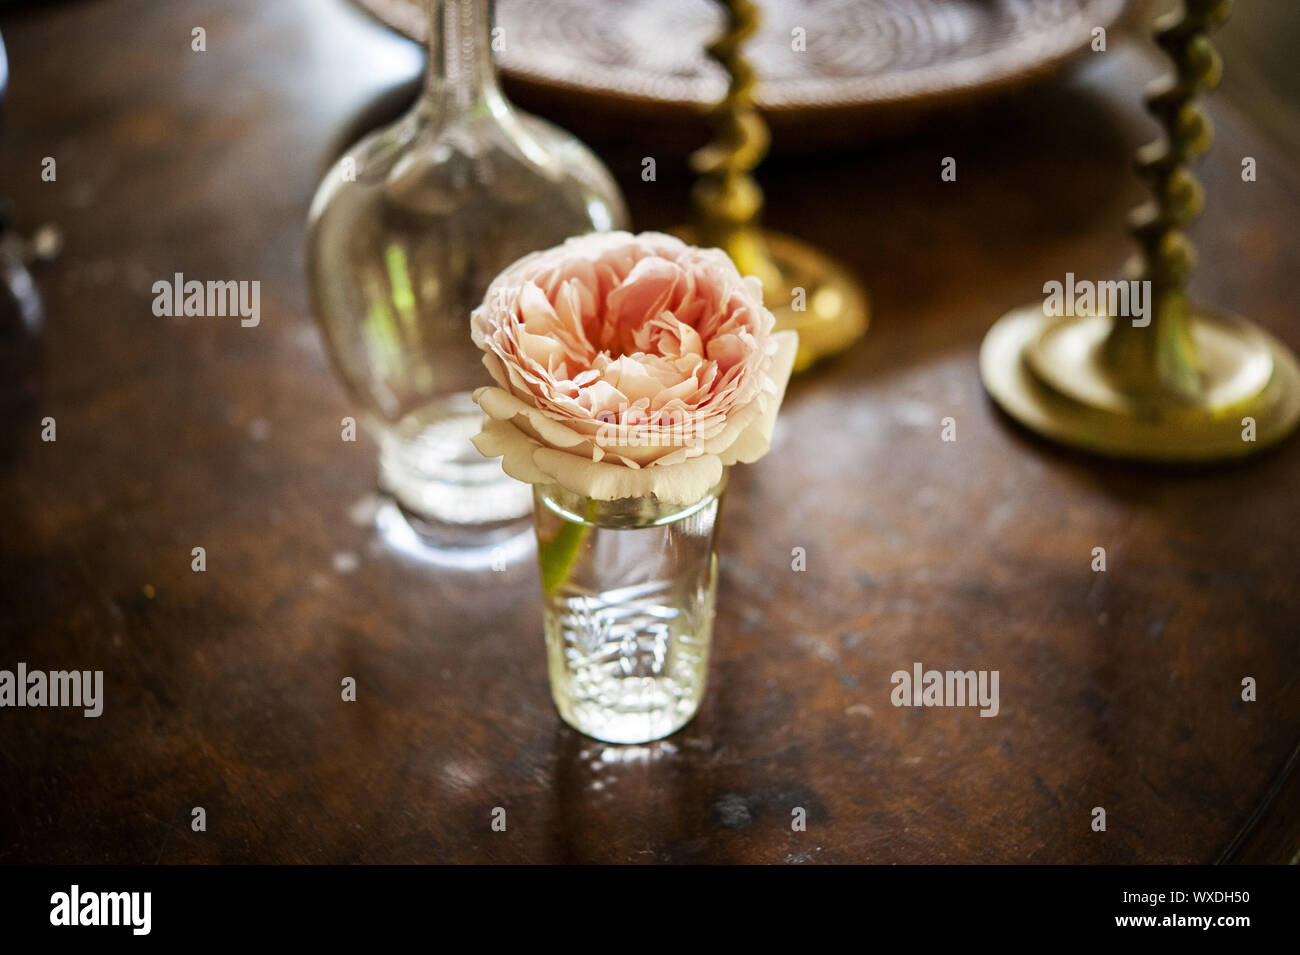 Rosa rosa taglio di fiori in vaso di cristallo sulla tavola con candela stick e vaso Foto Stock